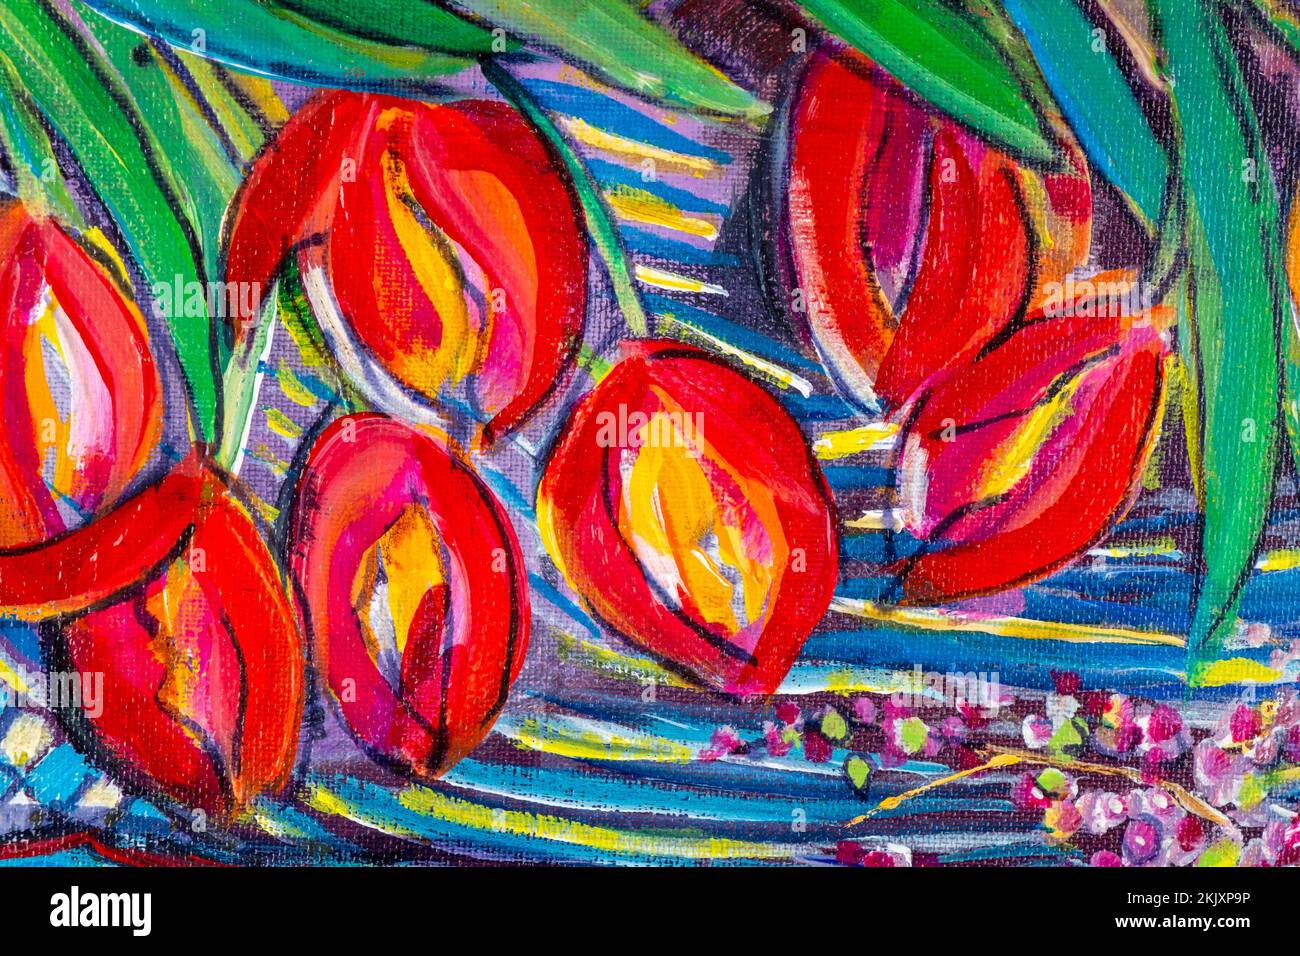 Peinture acrylique d'origine multicolore et dynamique, gros plan sur les travaux de pinceau et les textures de toile. Tulipes, fleurs coupées. Banque D'Images